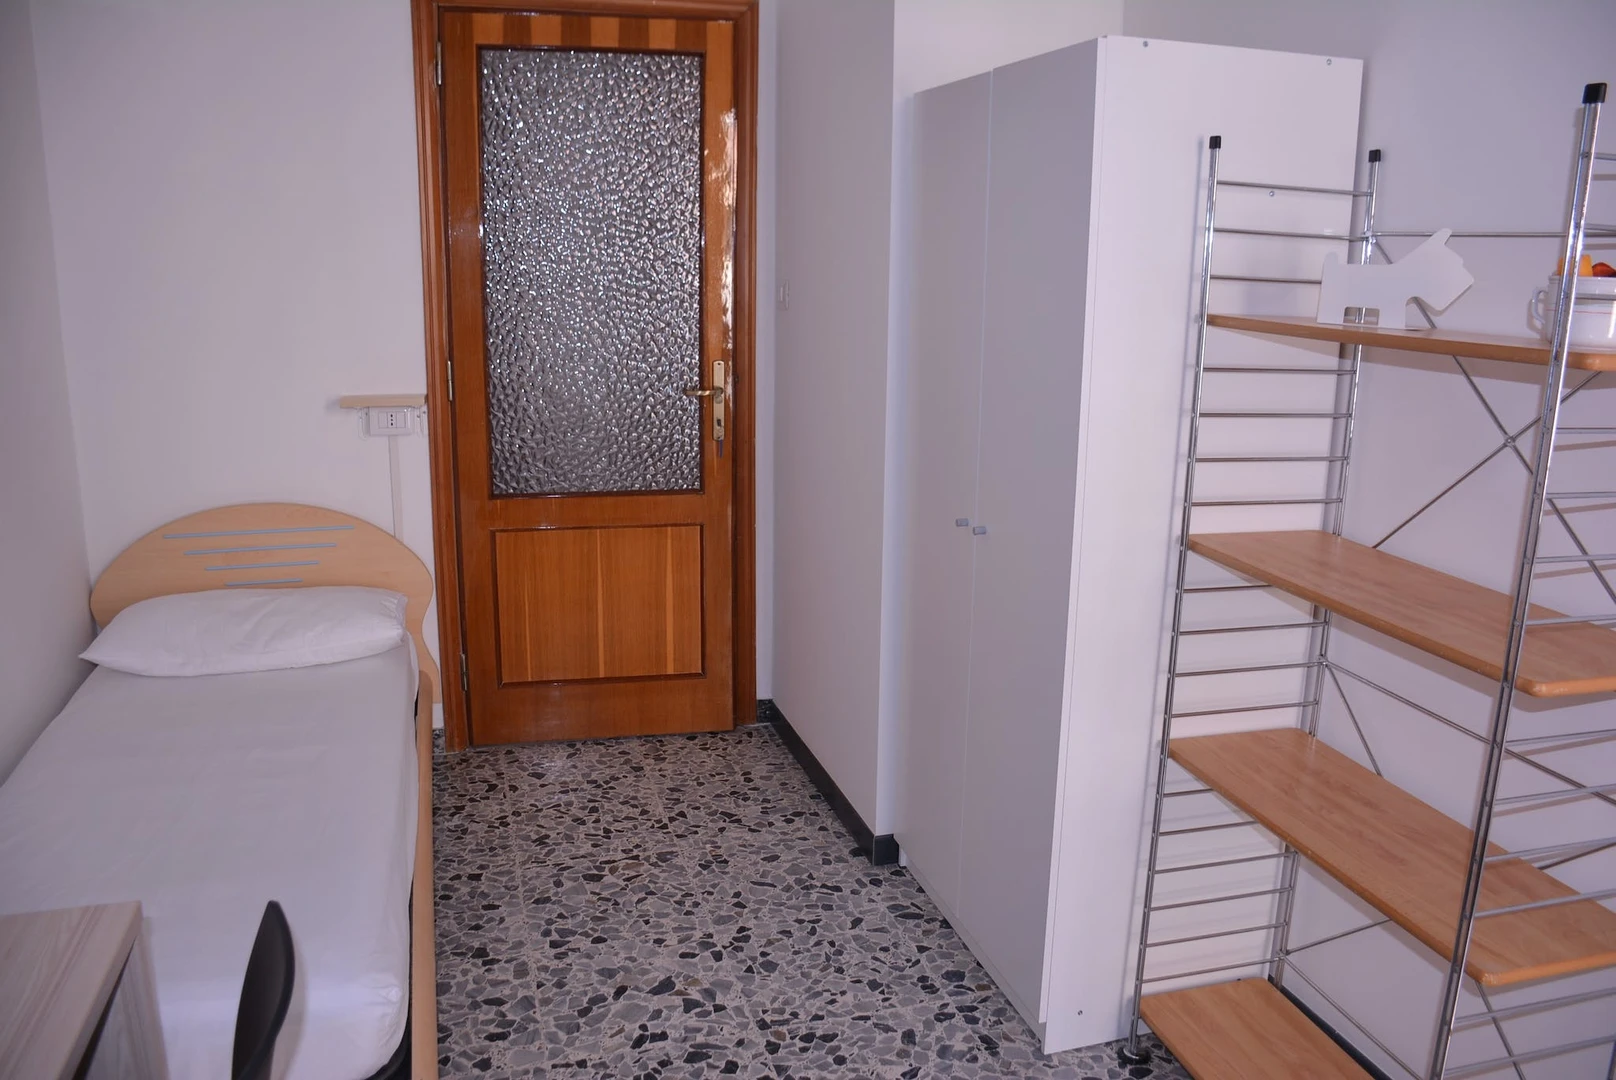 Alquiler de habitaciones por meses en Casteddu/cagliari